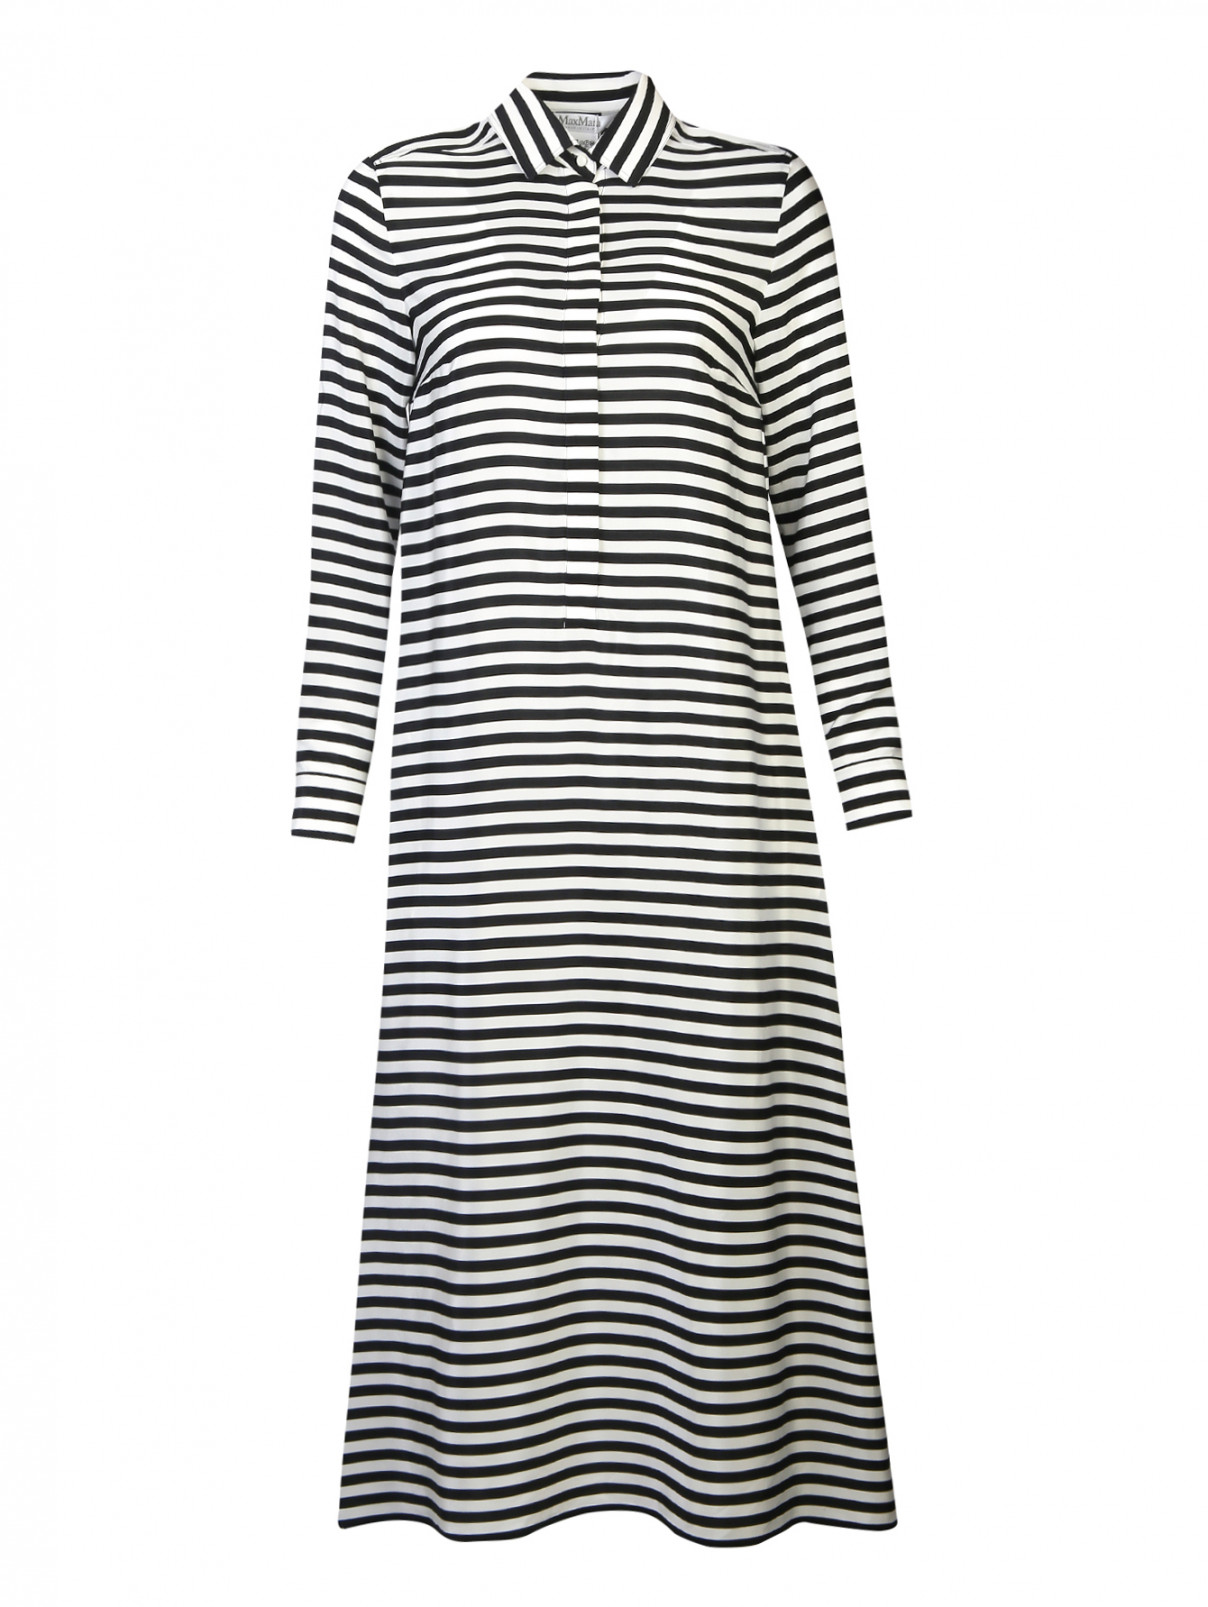 Платье-рубашка из шелка в полоску Max Mara  –  Общий вид  – Цвет:  Черный